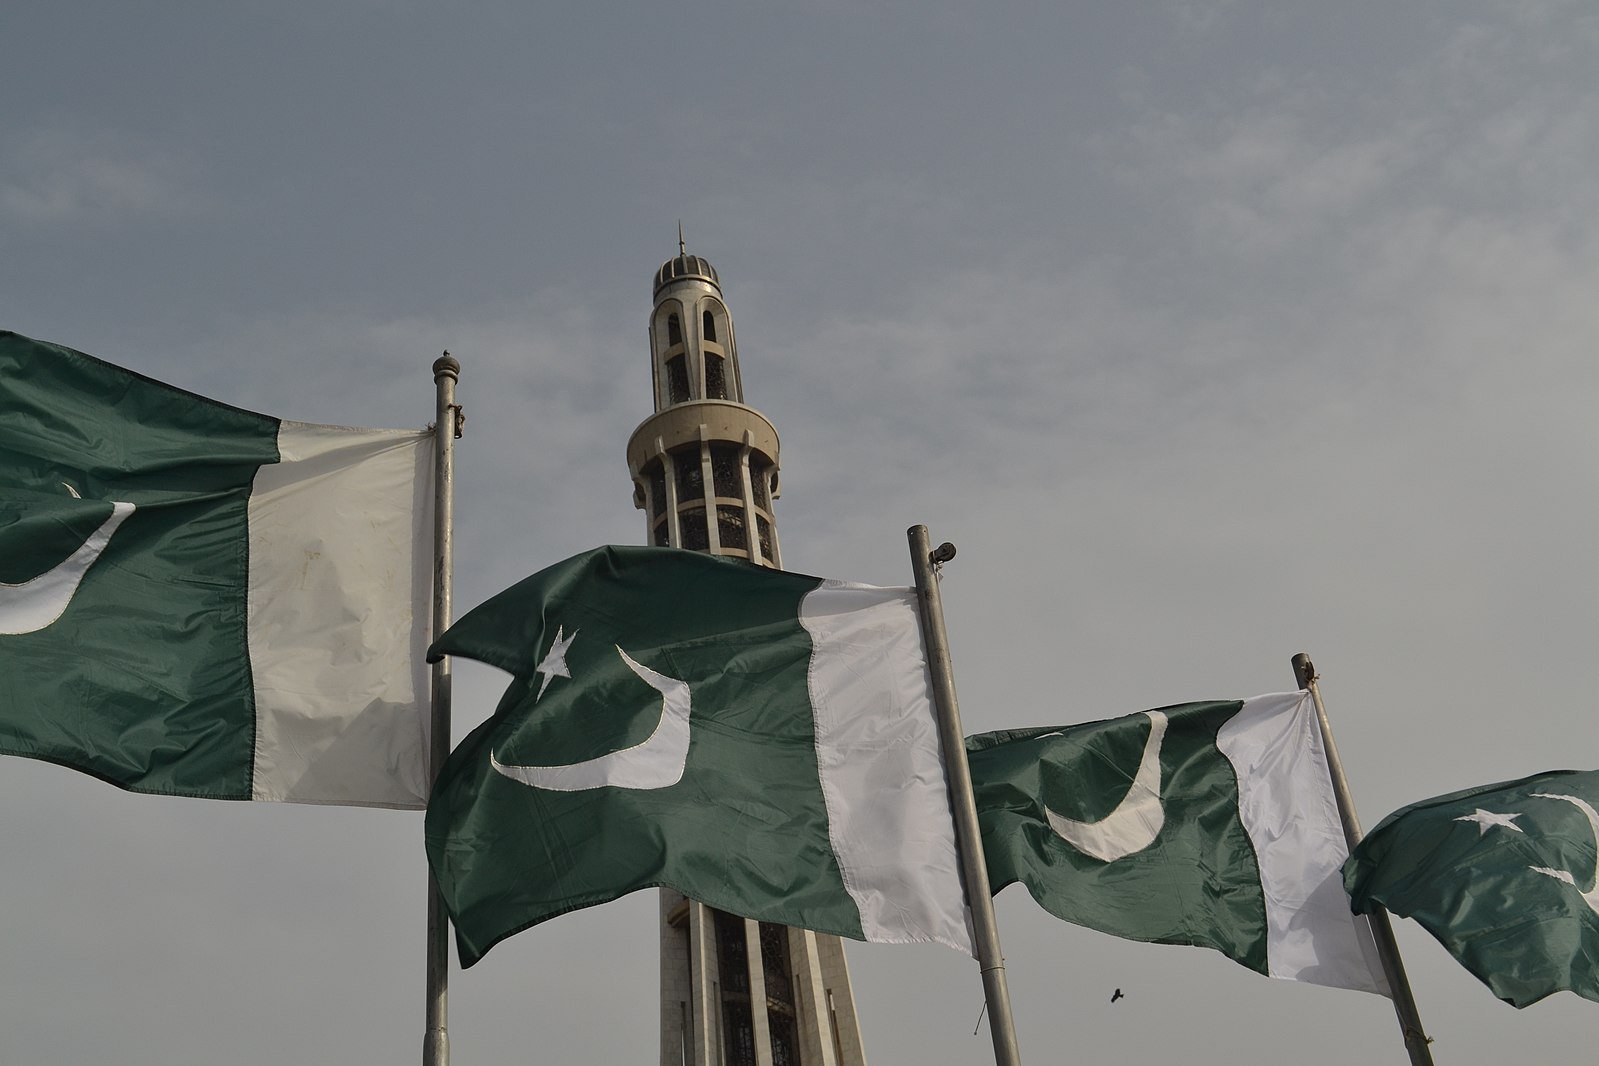 Piden fianza 8 veces superior al máximo permitido a cristiano acusado de blasfemia en Pakistán